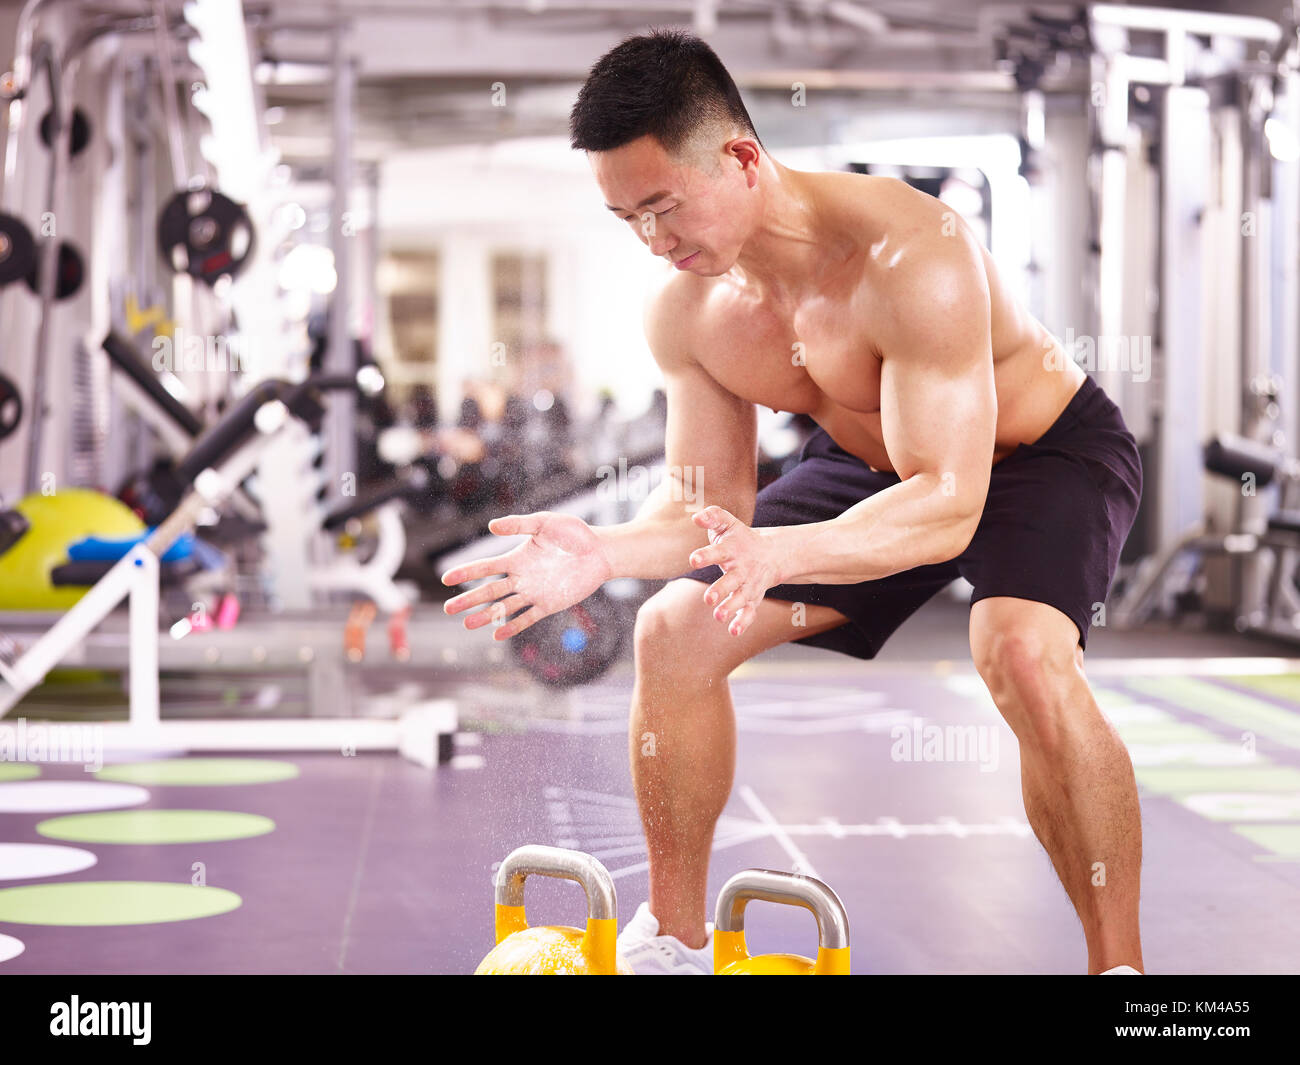 Asiatische männlichen Bodybuilder trainieren Sie im Fitnessraum mit Wasserkocher Glocken. Stockfoto